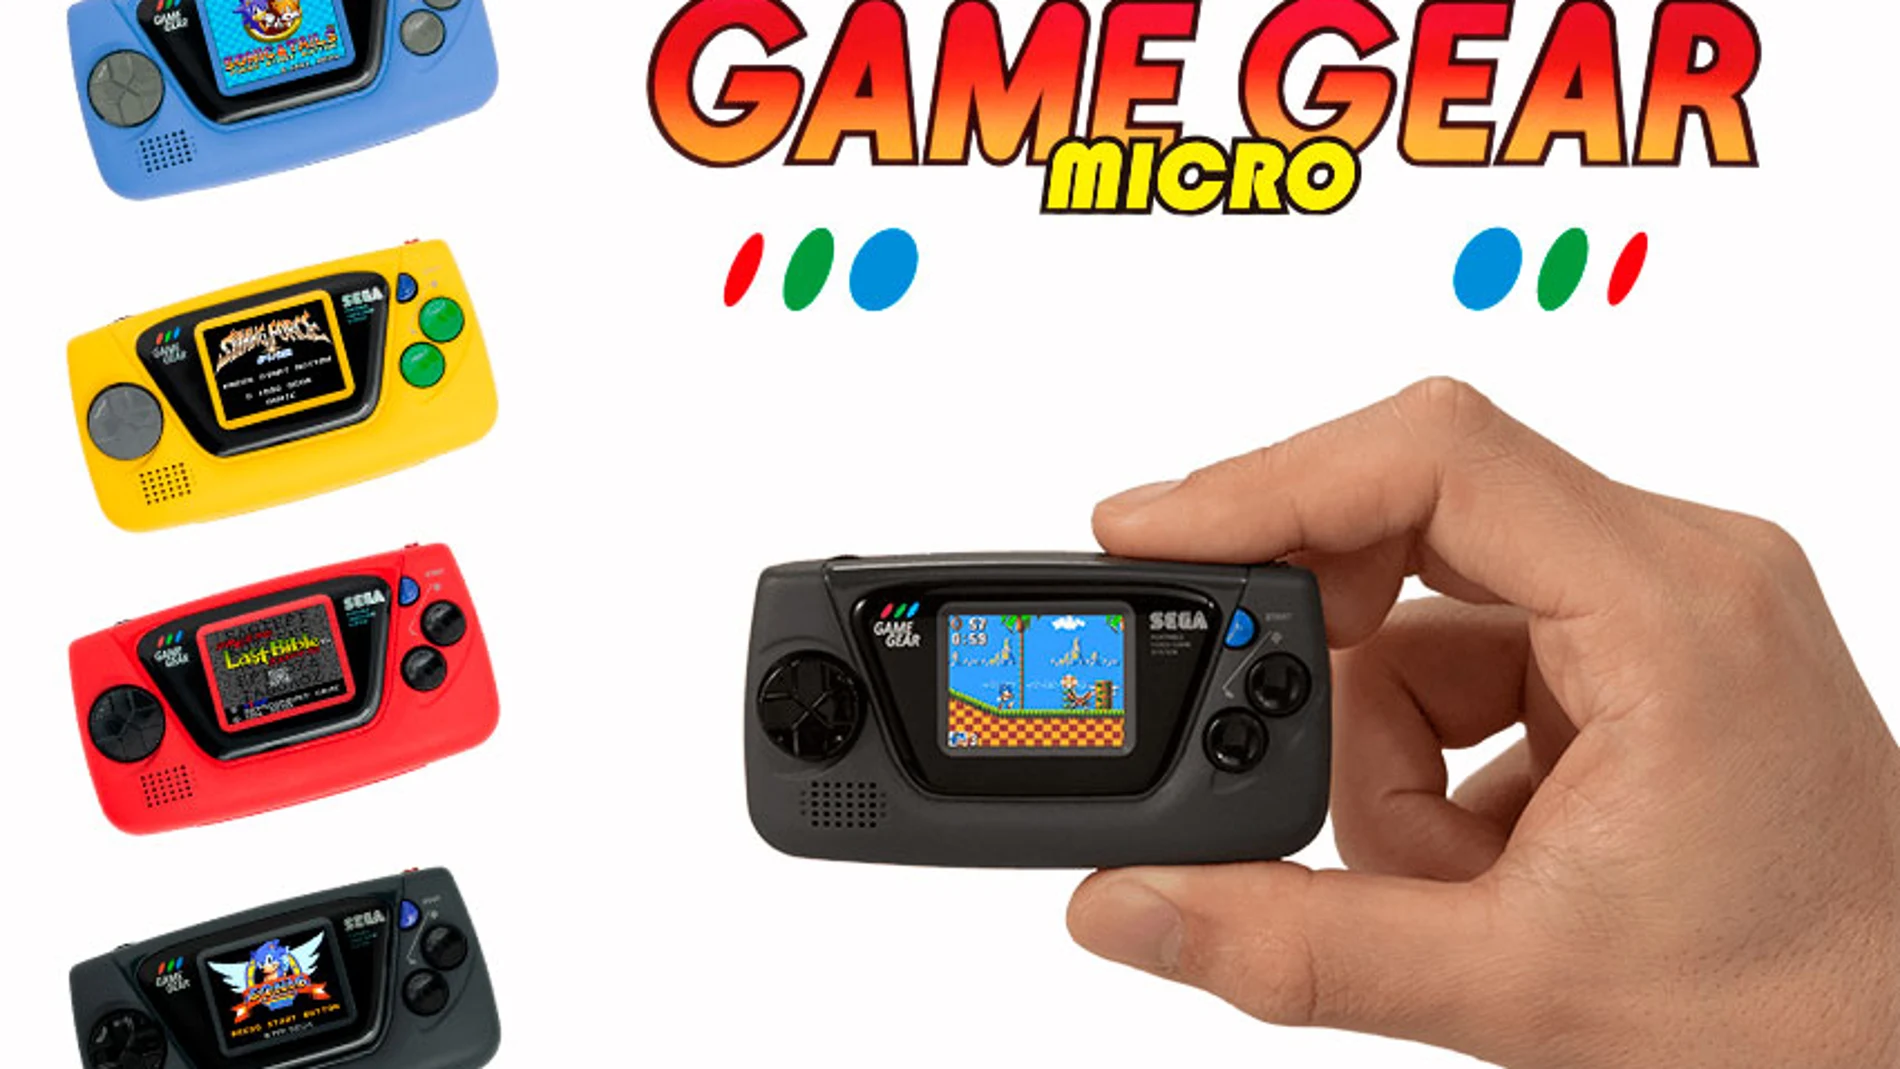 La edición Micro se reduce hasta el 40% con respecto al tamaño de Game Gear original